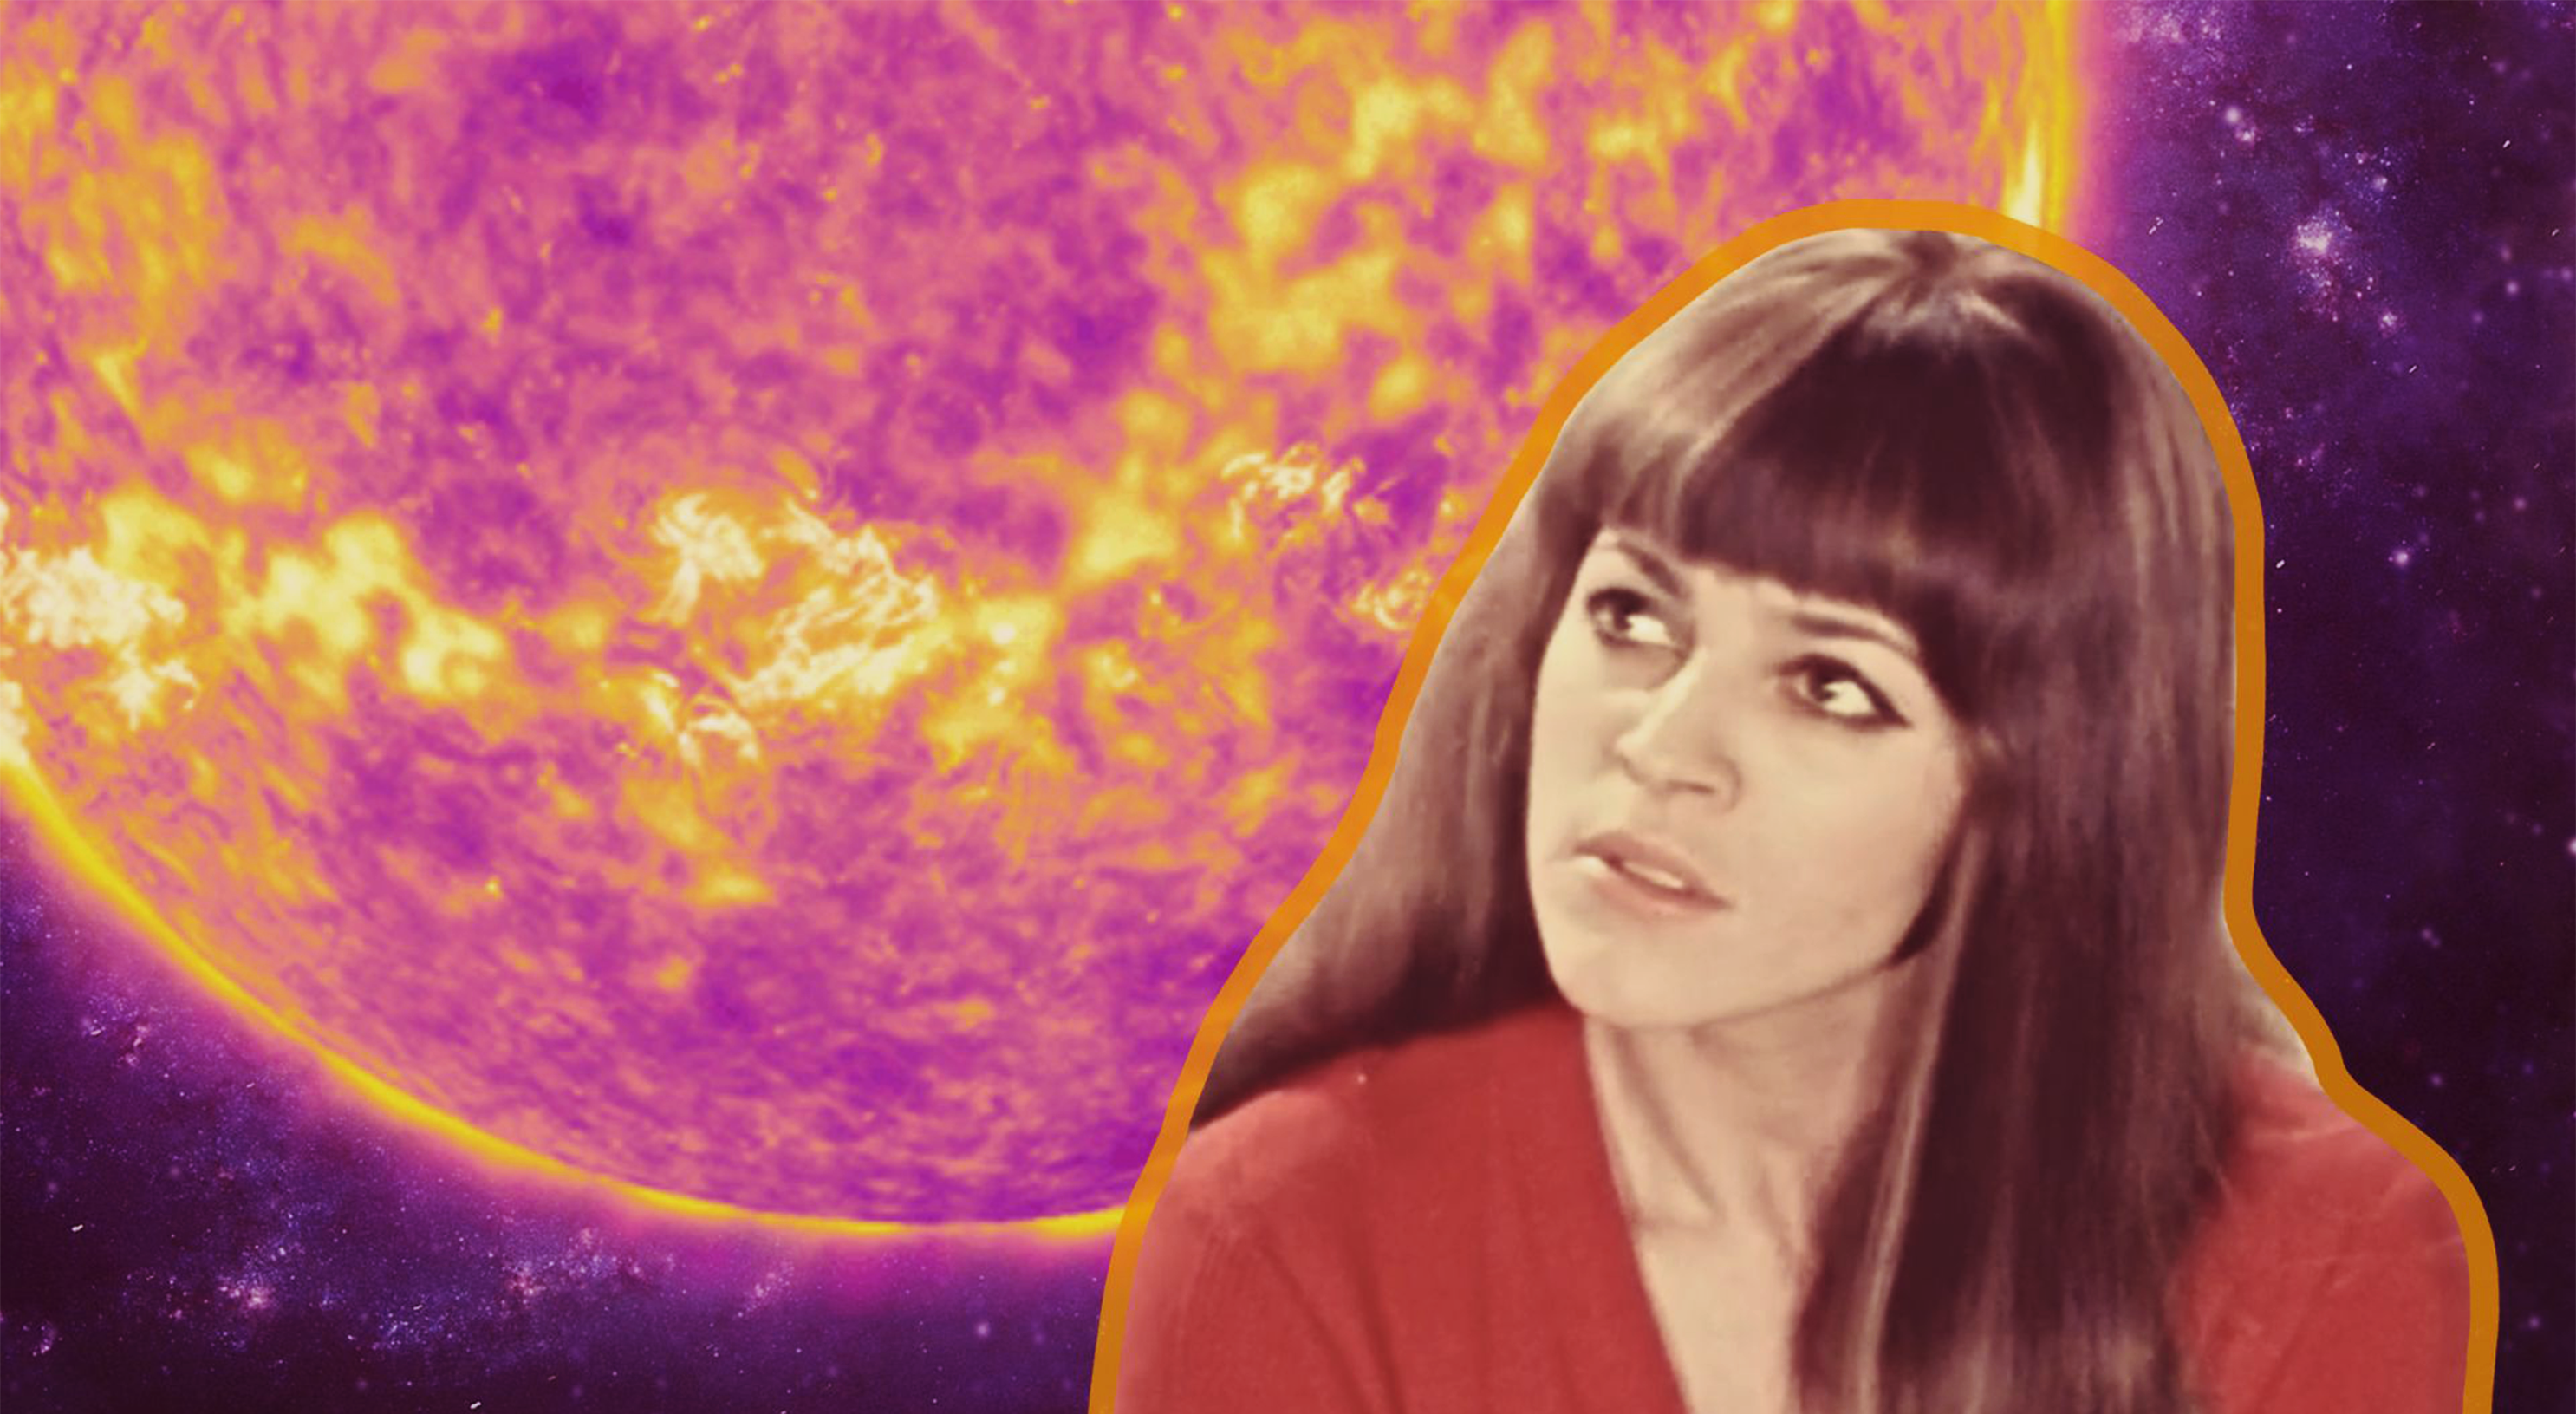 La science en chansons: "Il est mort le soleil" (1967) de Nicoletta.